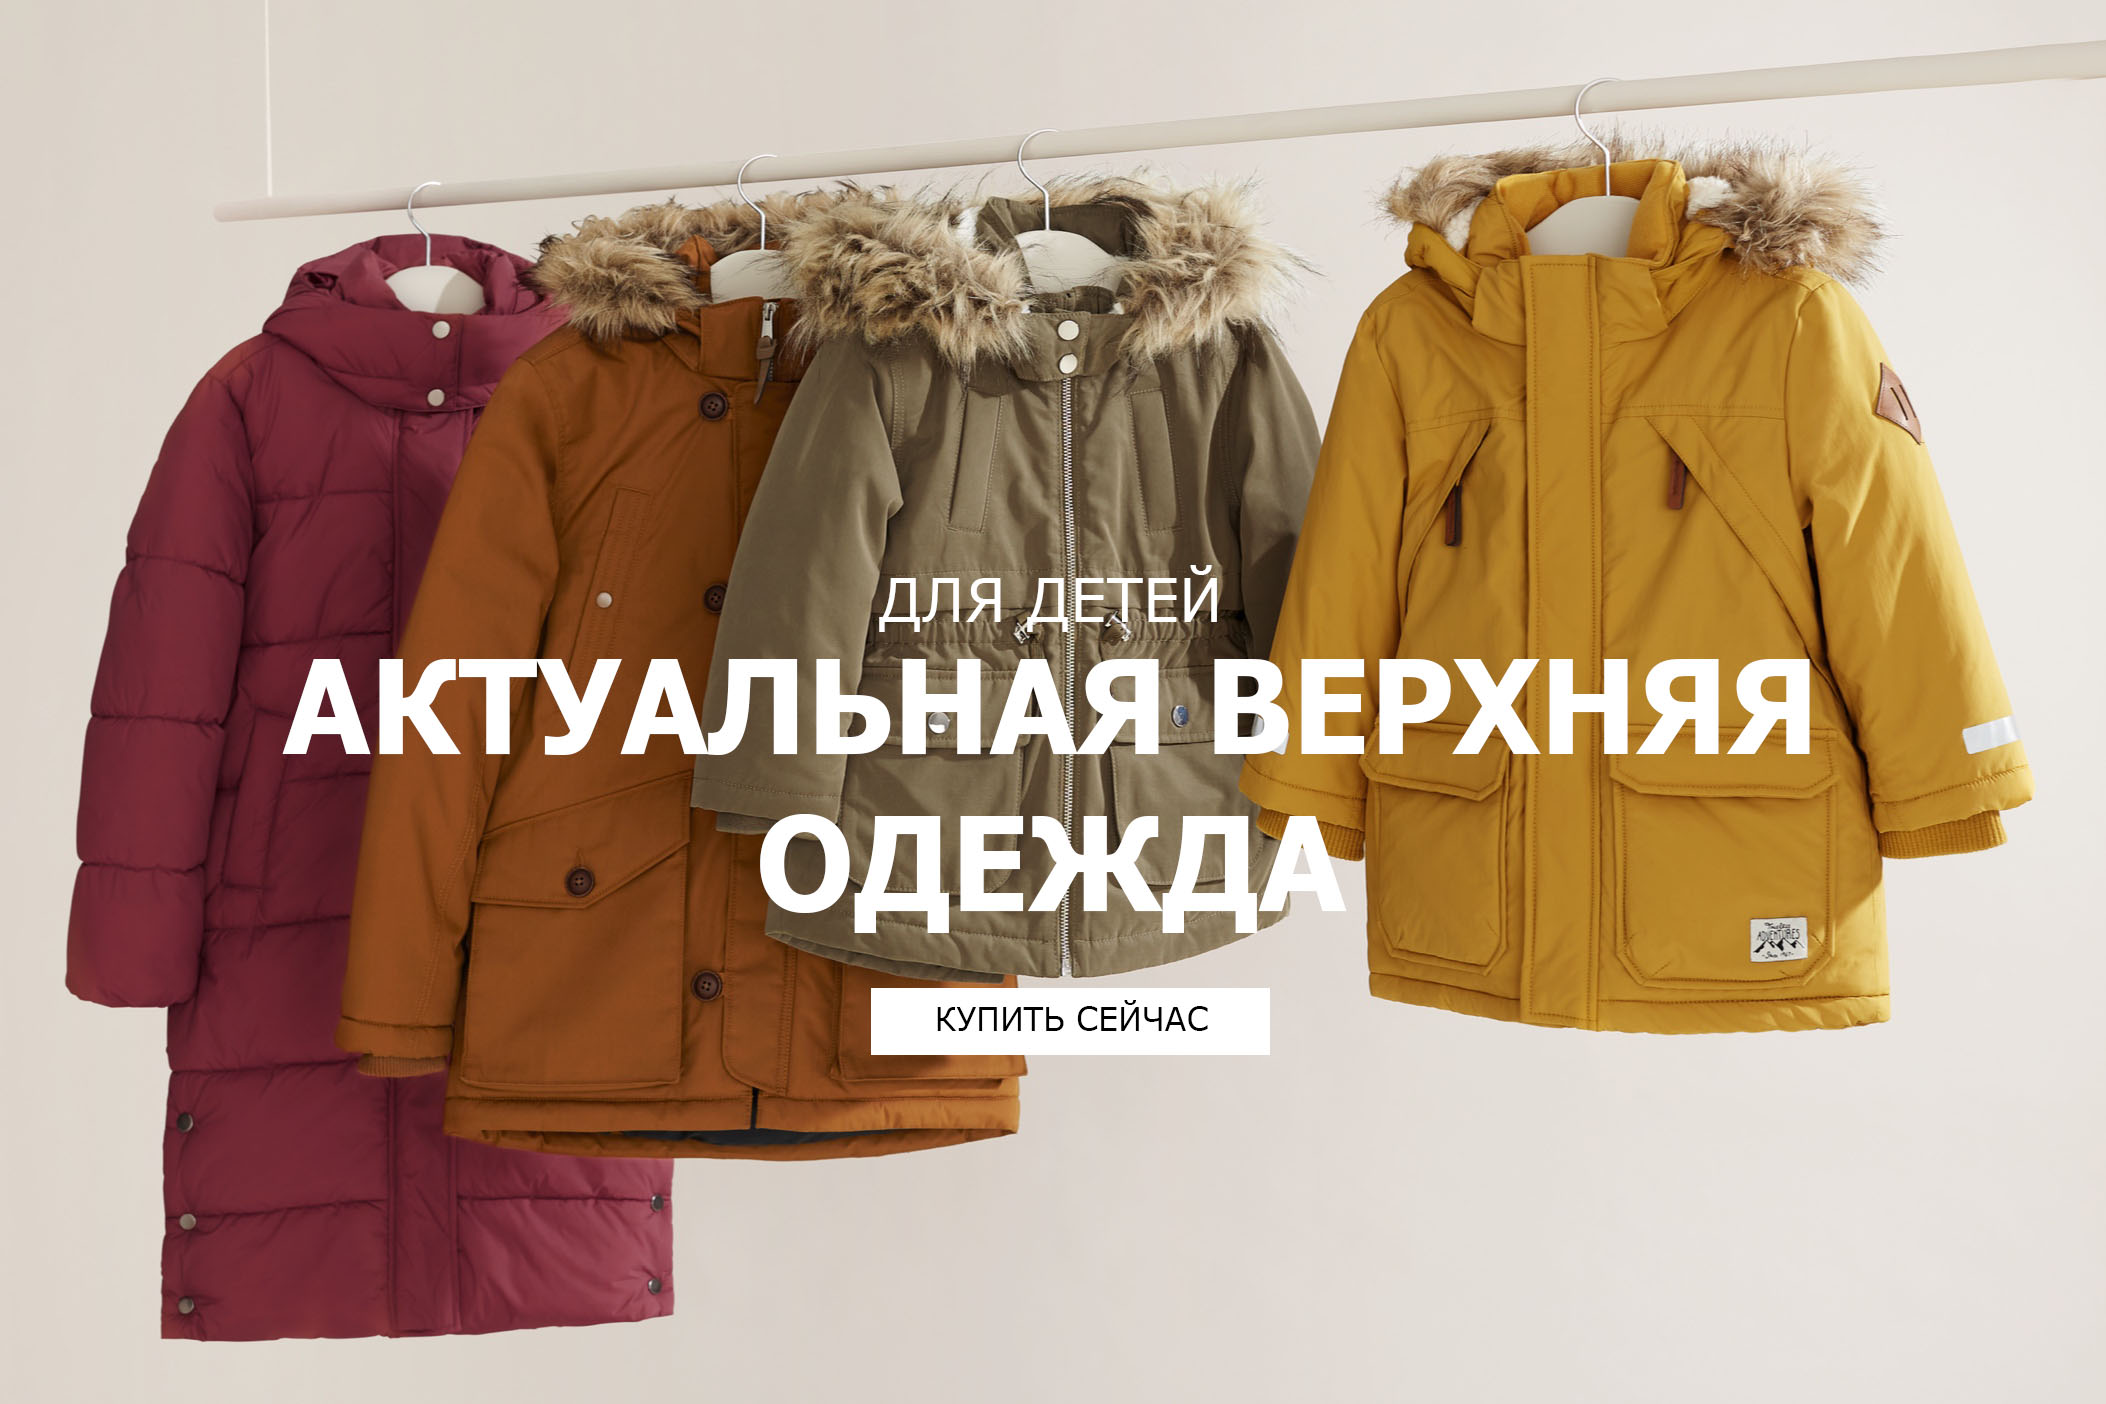 Эйчендем Интернет Магазин Детская Одежда Москва